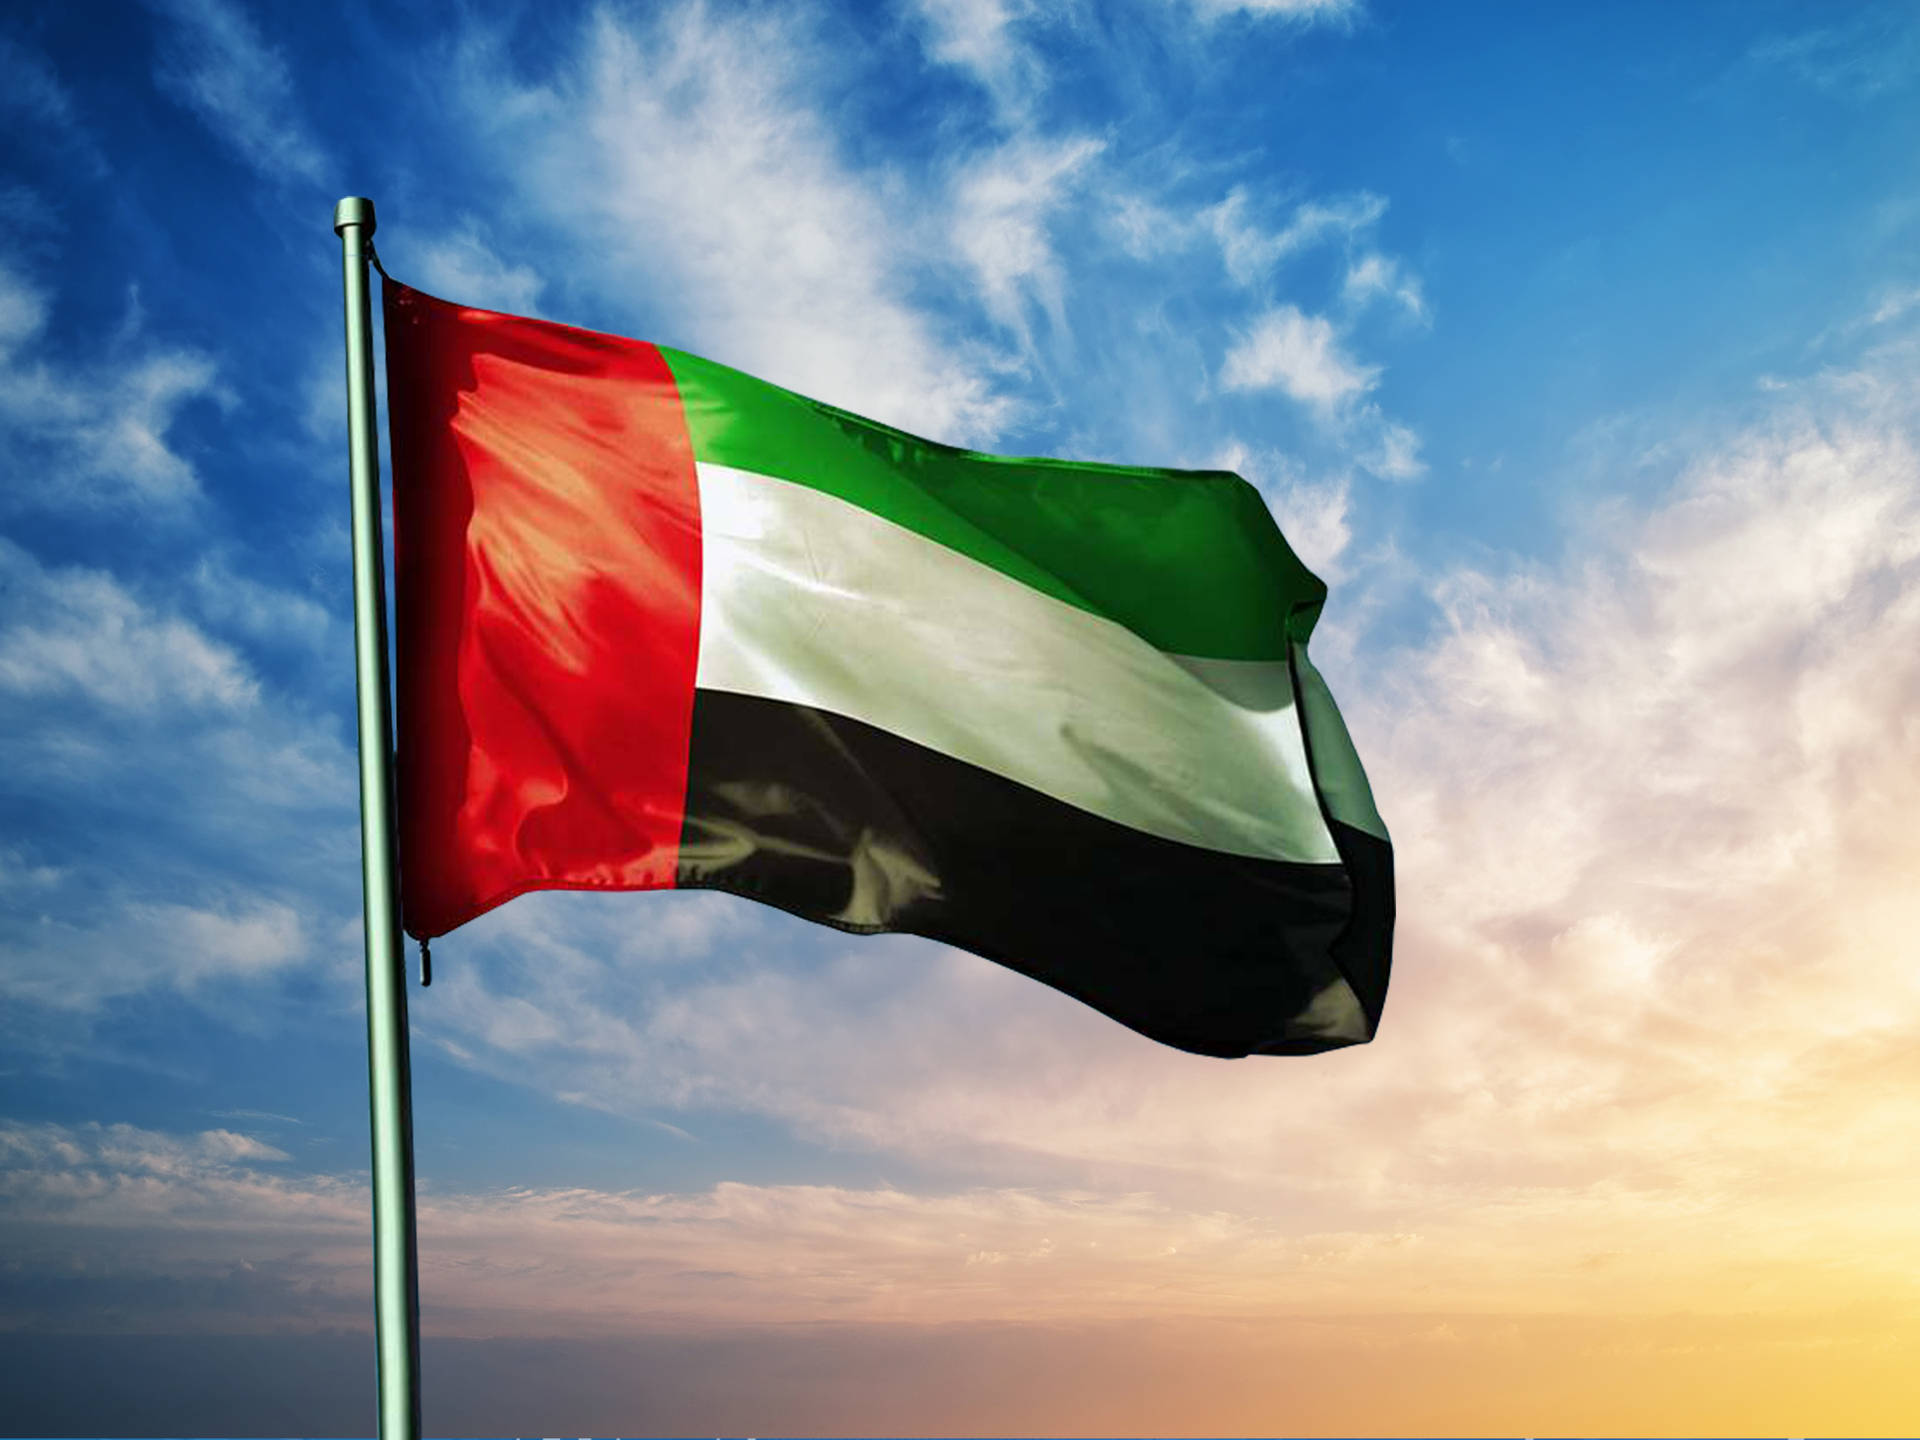 Banderade Los Emiratos Árabes Unidos Fondo de pantalla